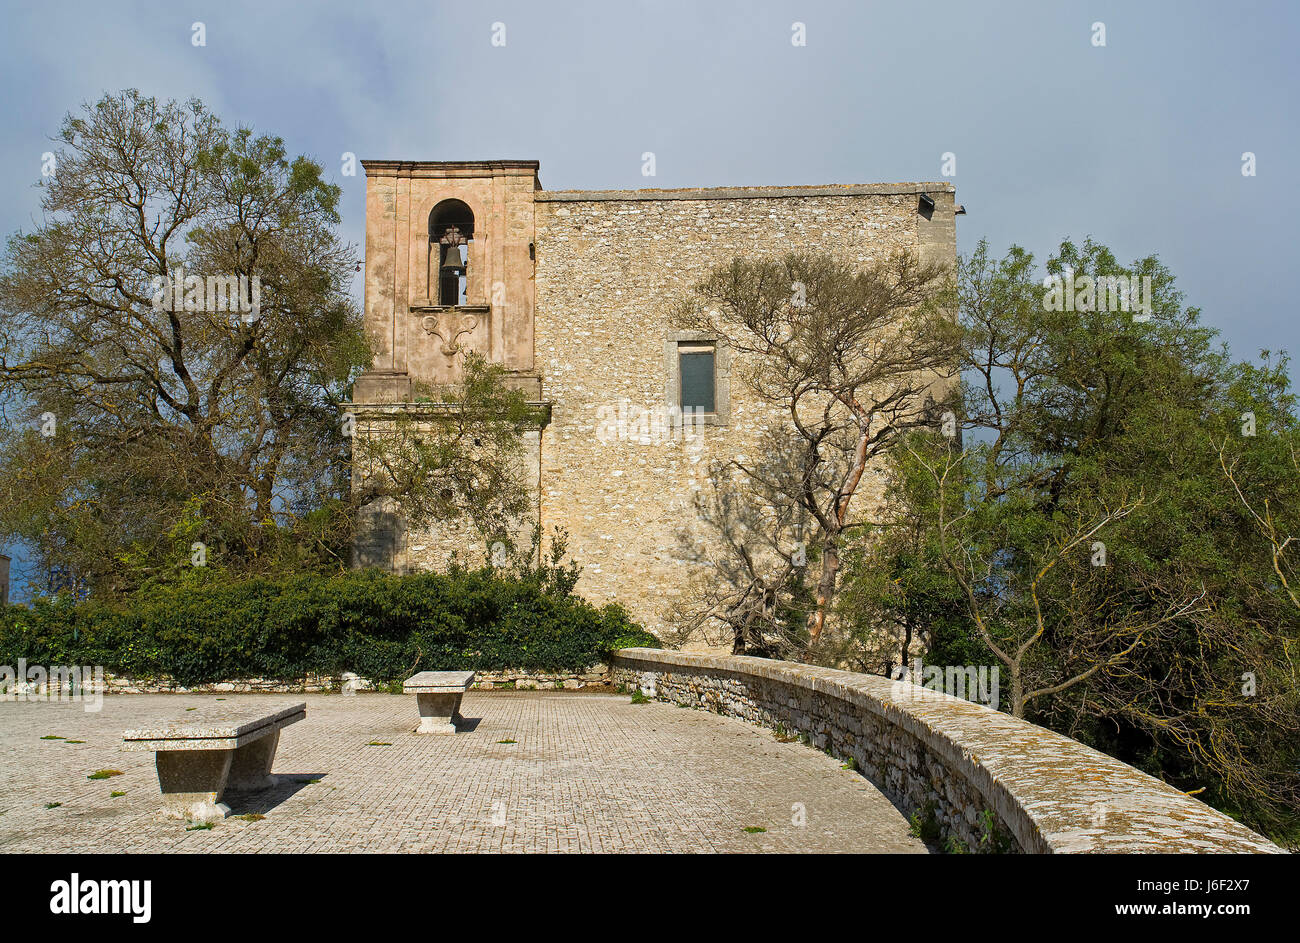 historische Kirche Sightseeing Kirchturm Sizilien Emblem Italien Reisen Gebäude Stockfoto